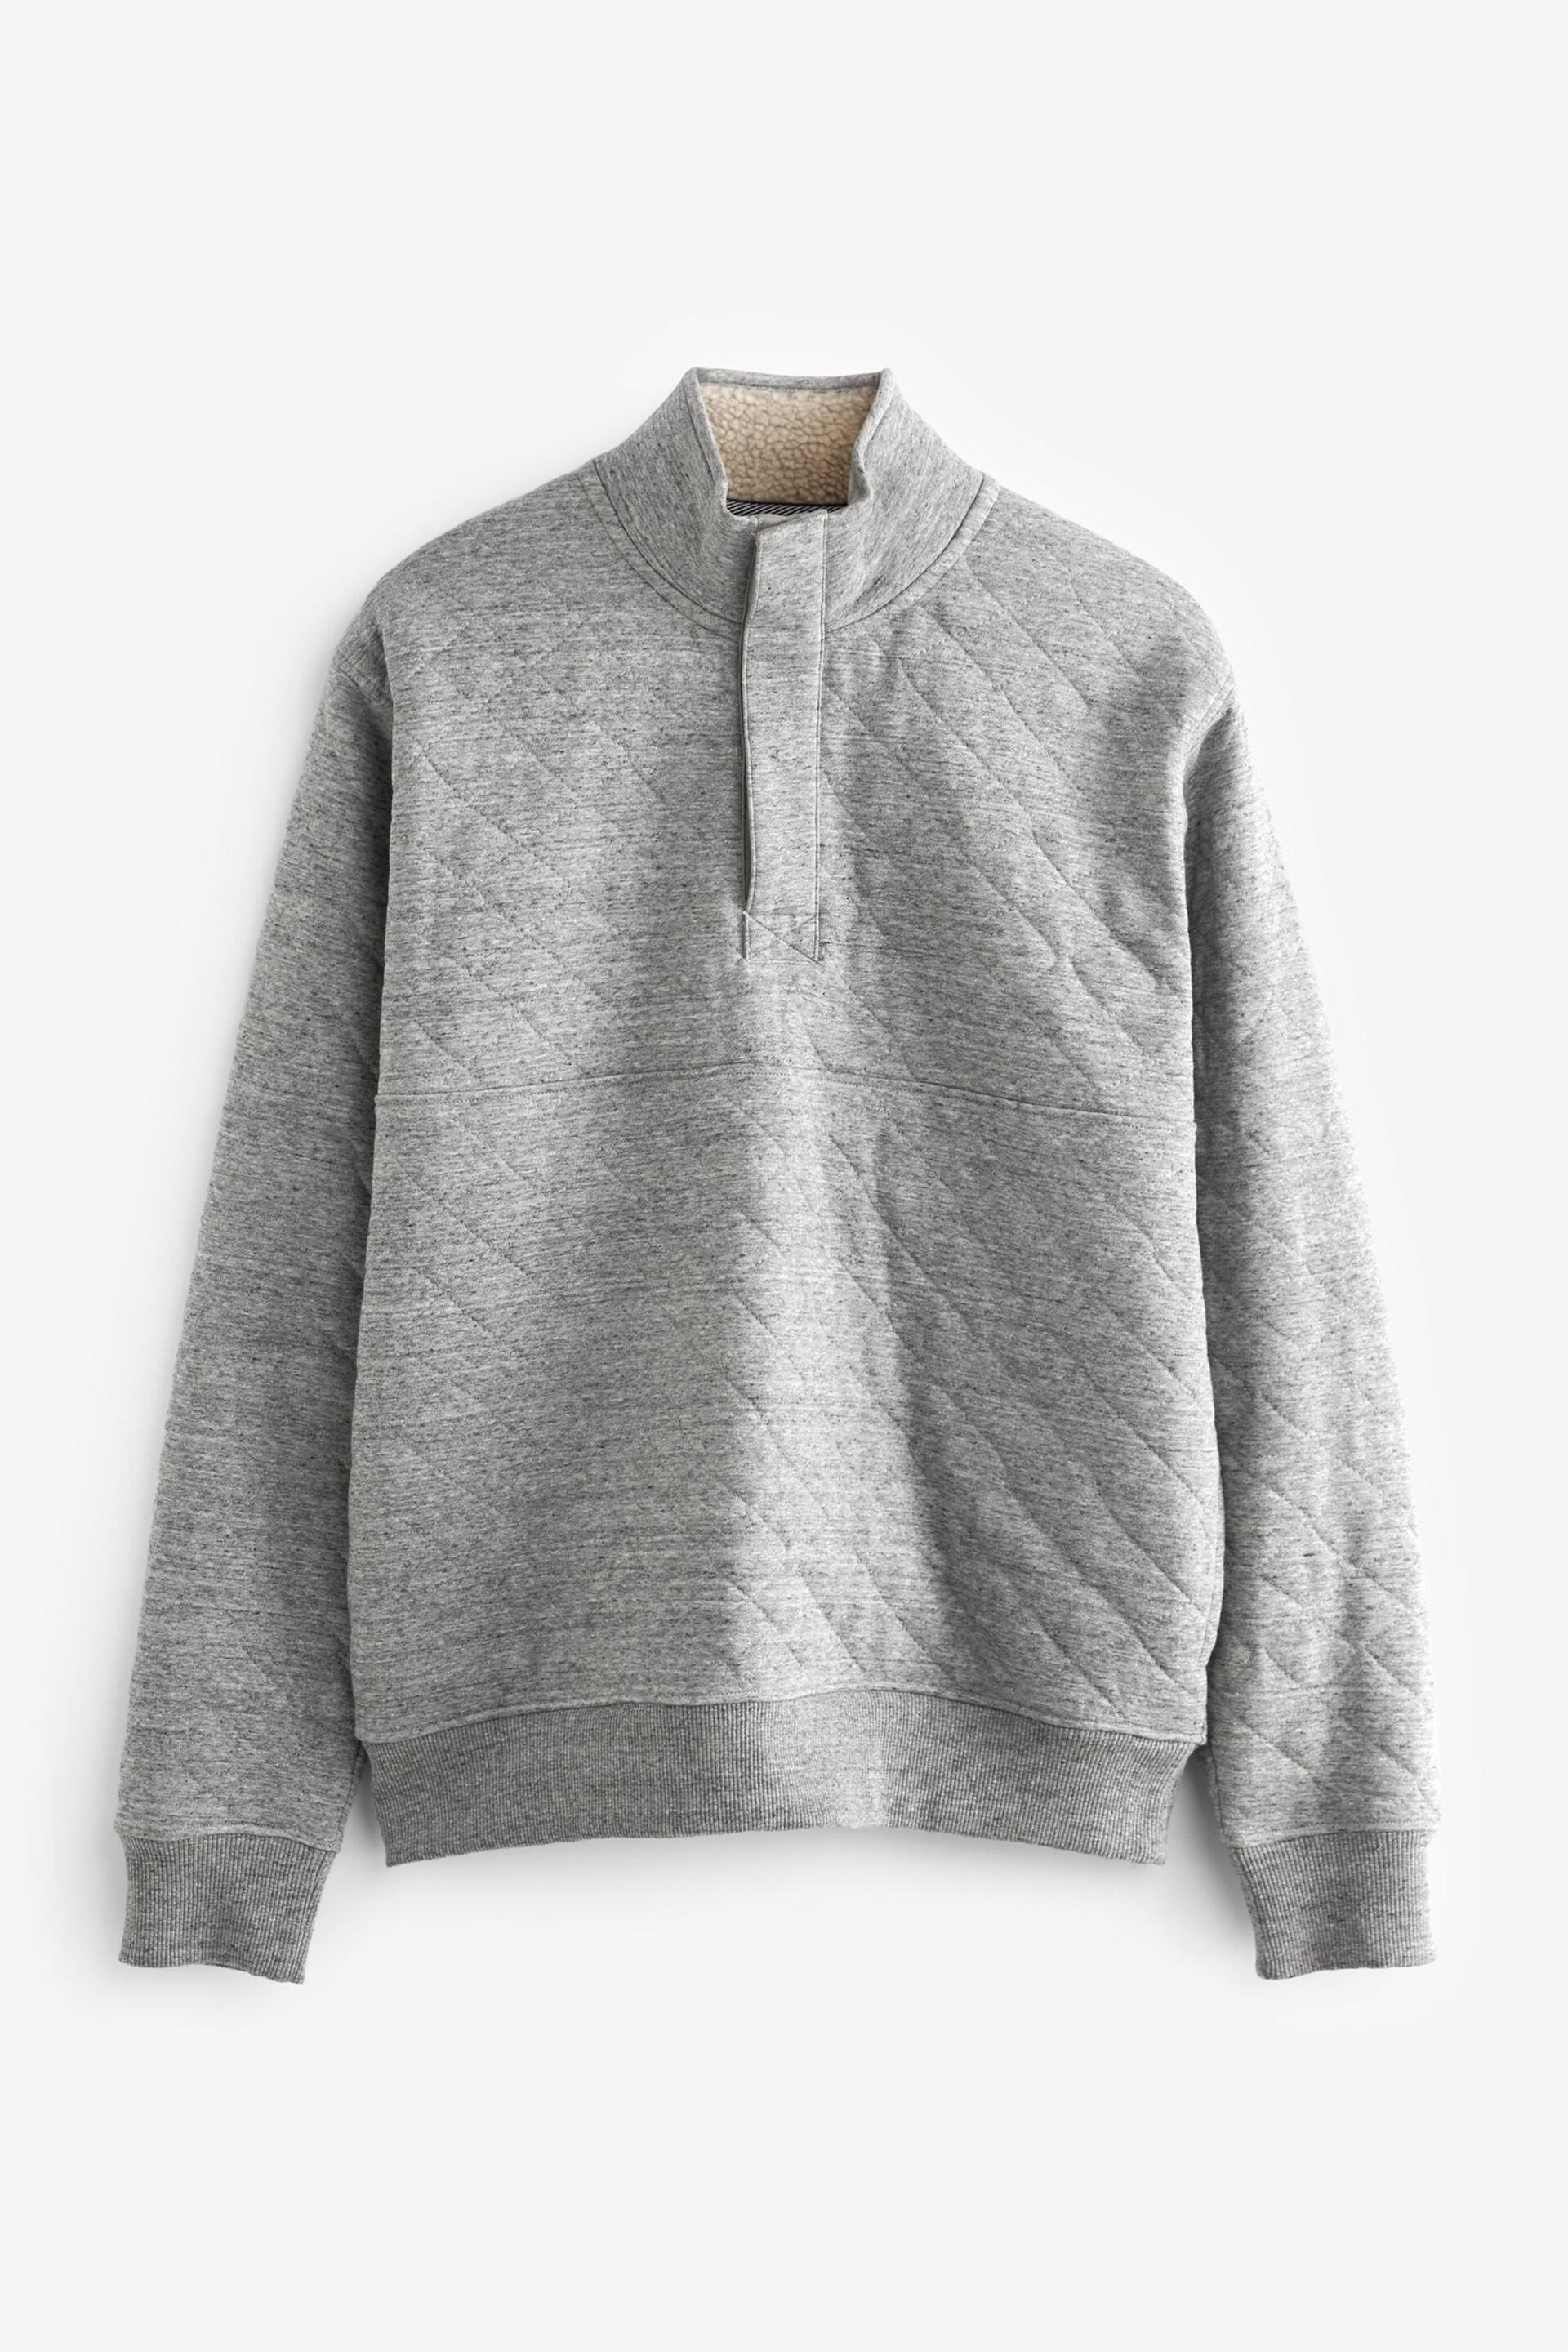 Grey Quilted Sweatshirt Hoodie - Image 6 of 8